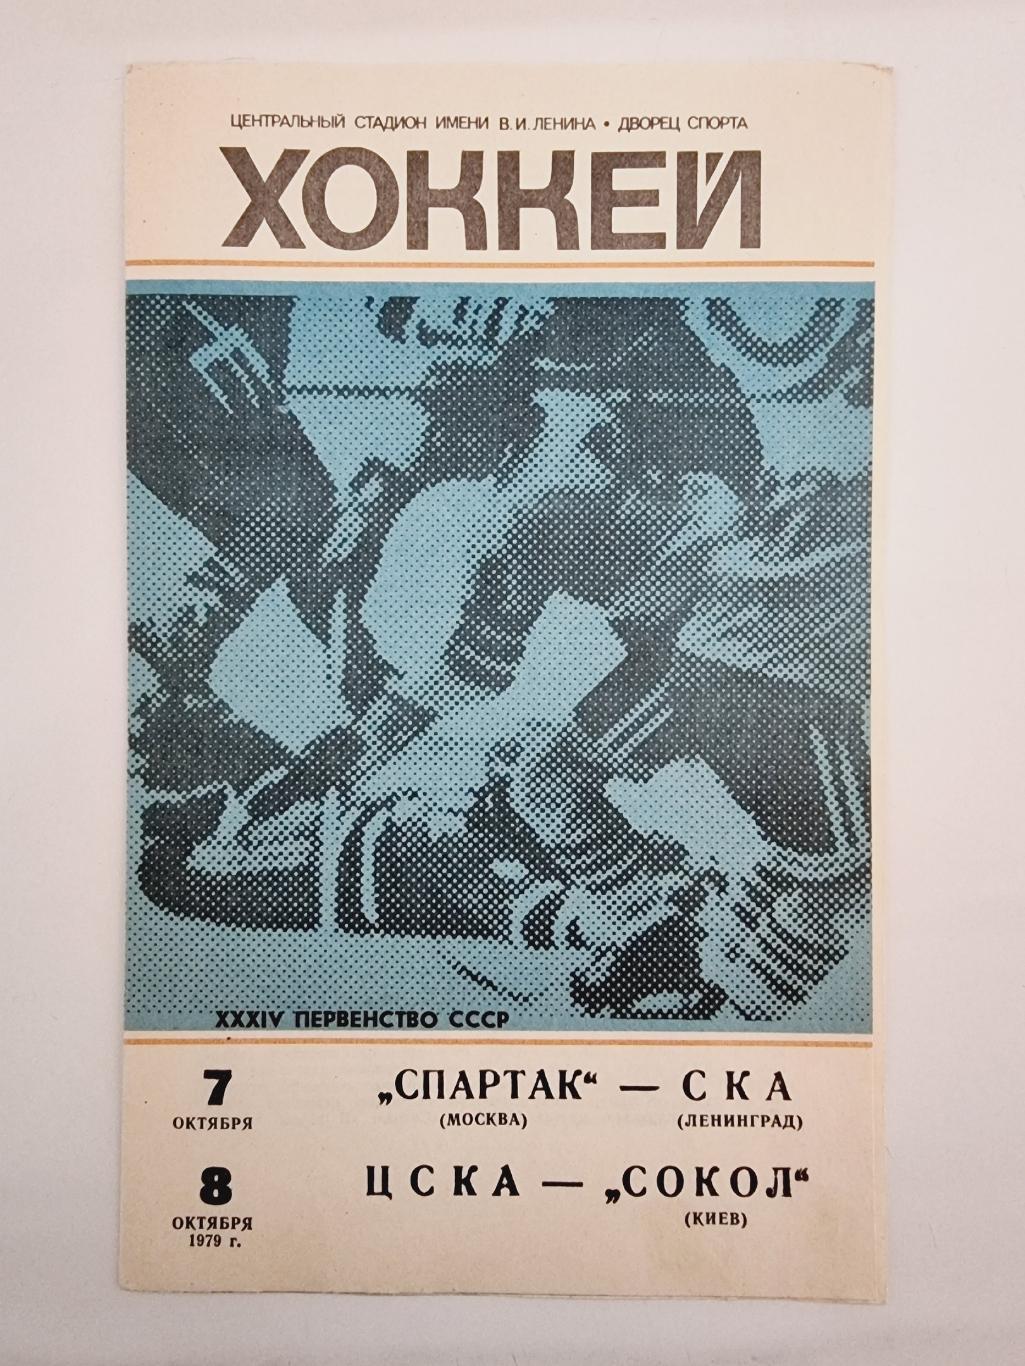 Спартак Москва - СКА Ленинград + ЦСКА Москва - Сокол Киев. 7/8 октября 1979 1